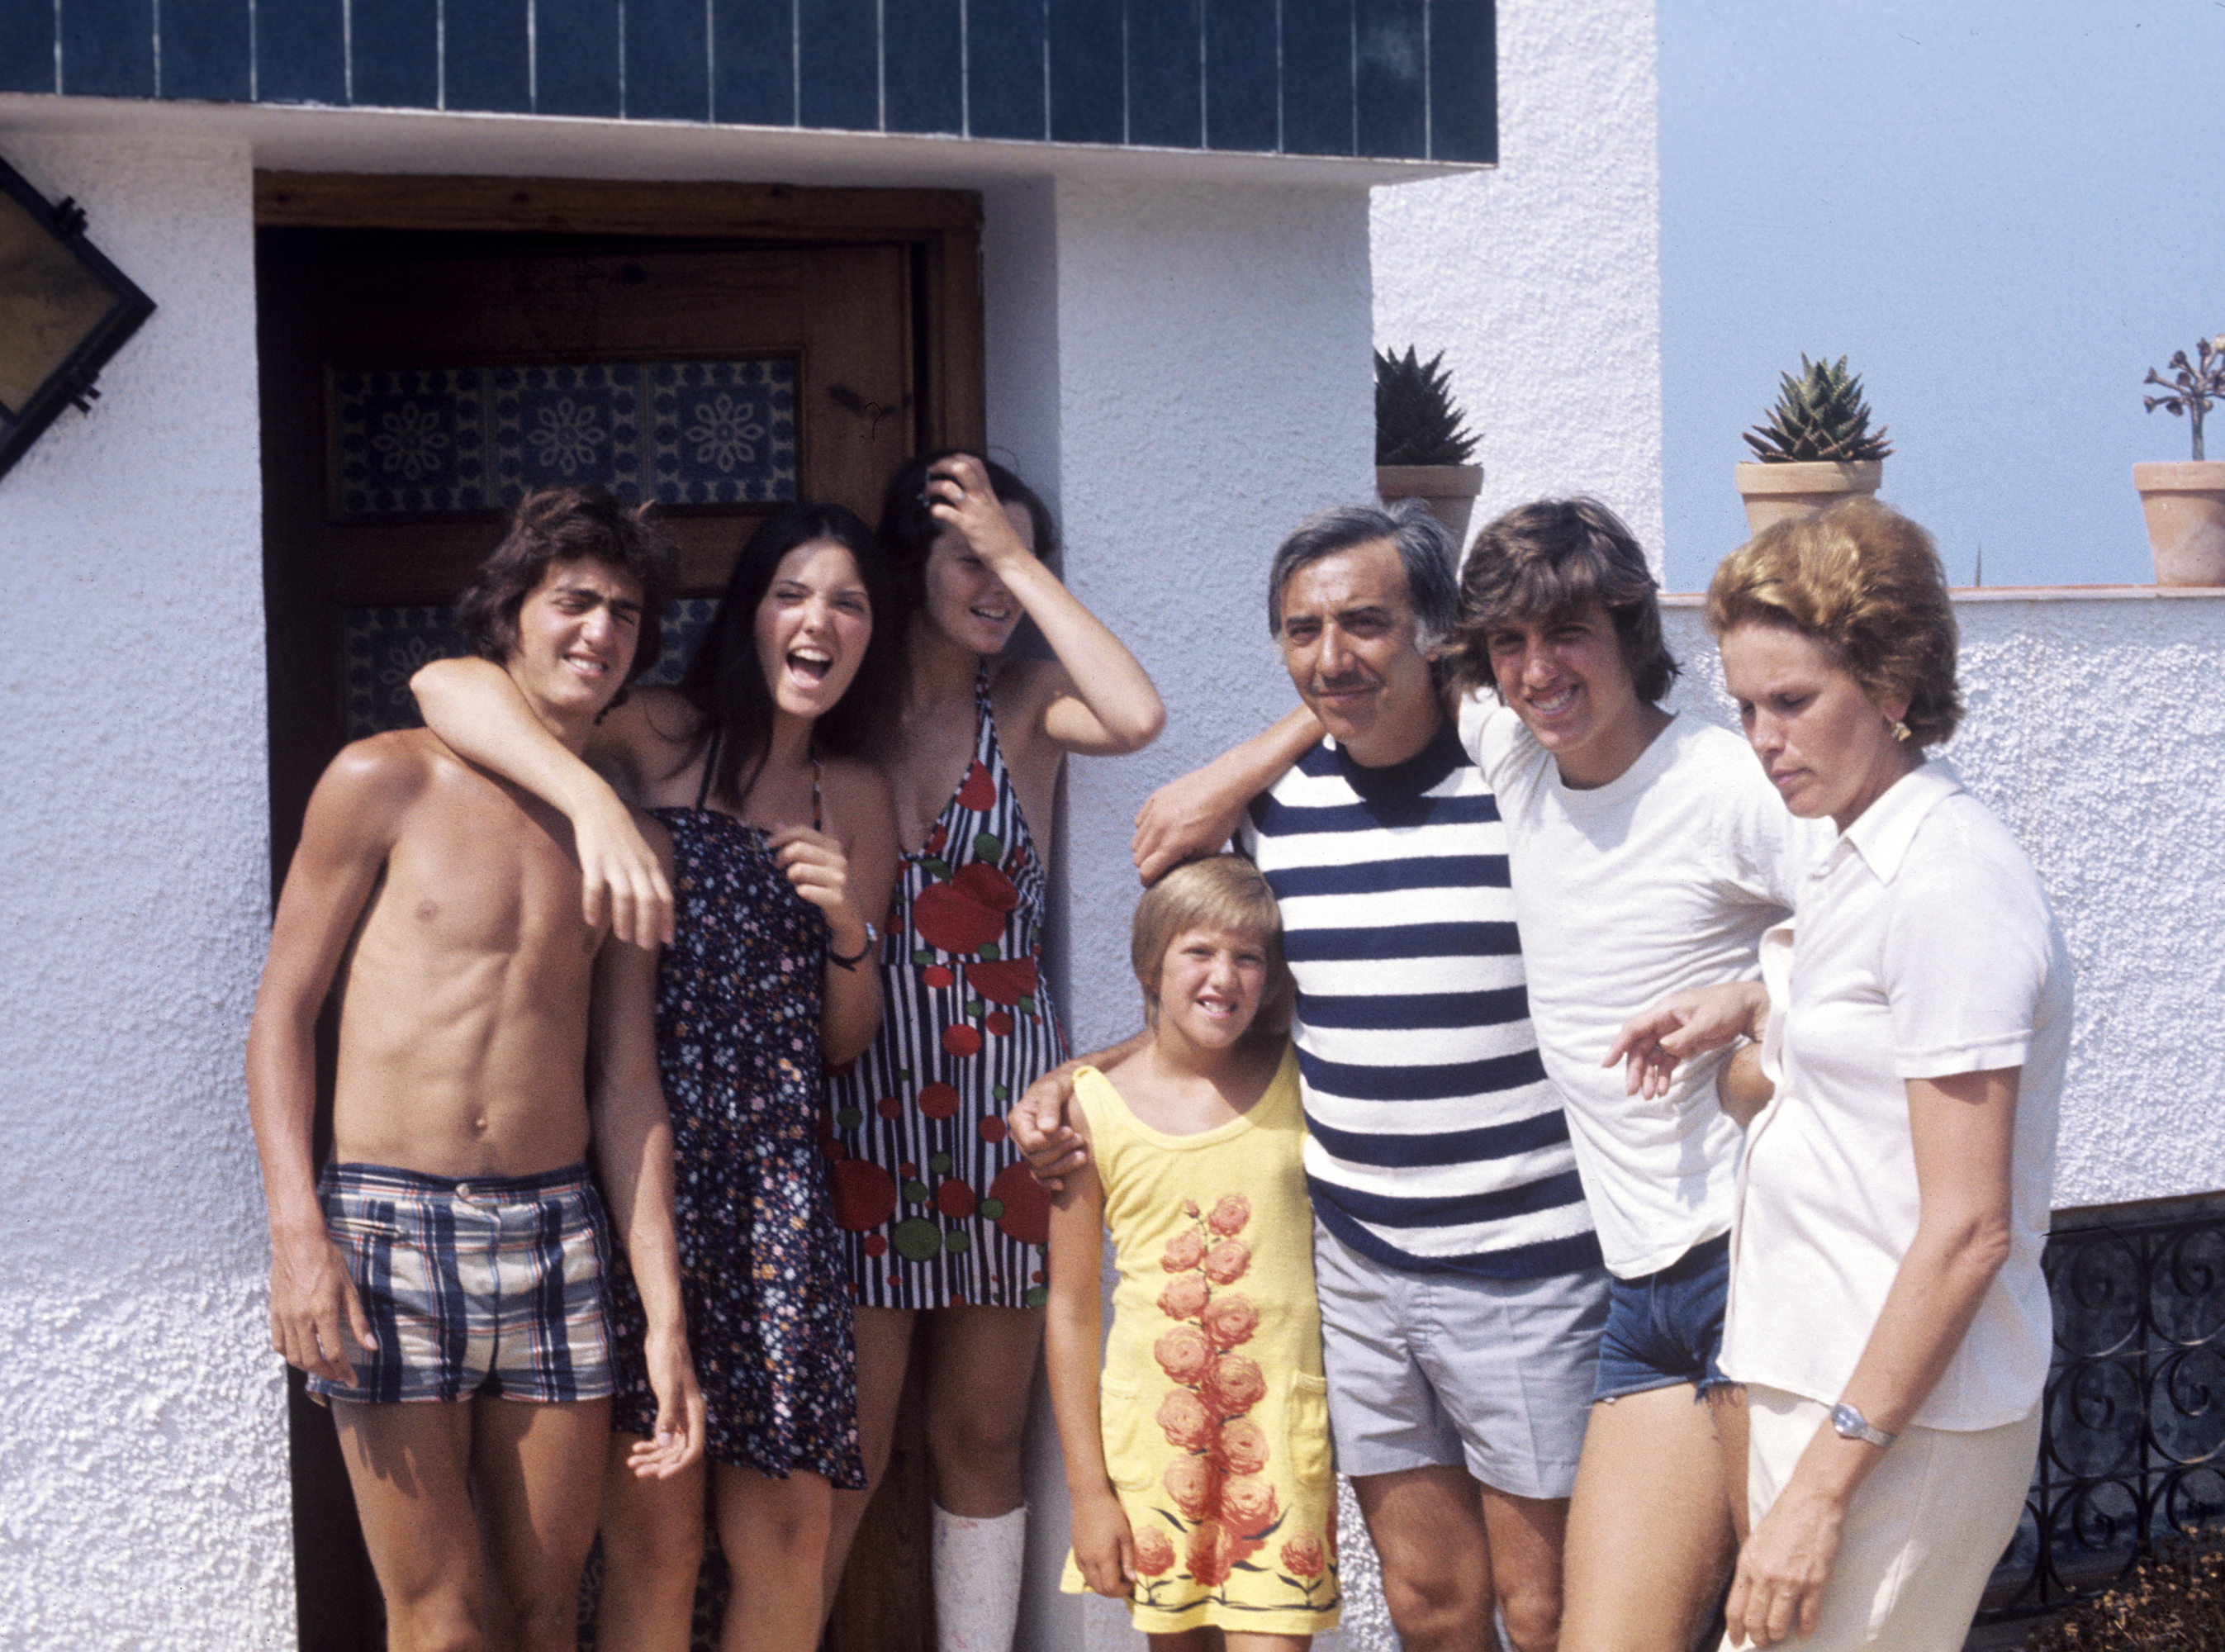 Vacaciones en familia en 1977: Emilio Aragón, más conocido como Miliki, de vacaciones con su familia, su sobrino Rody, sus hijas Rita, Pilar y Amparo, su hijo Milikito y su esposa Rita.